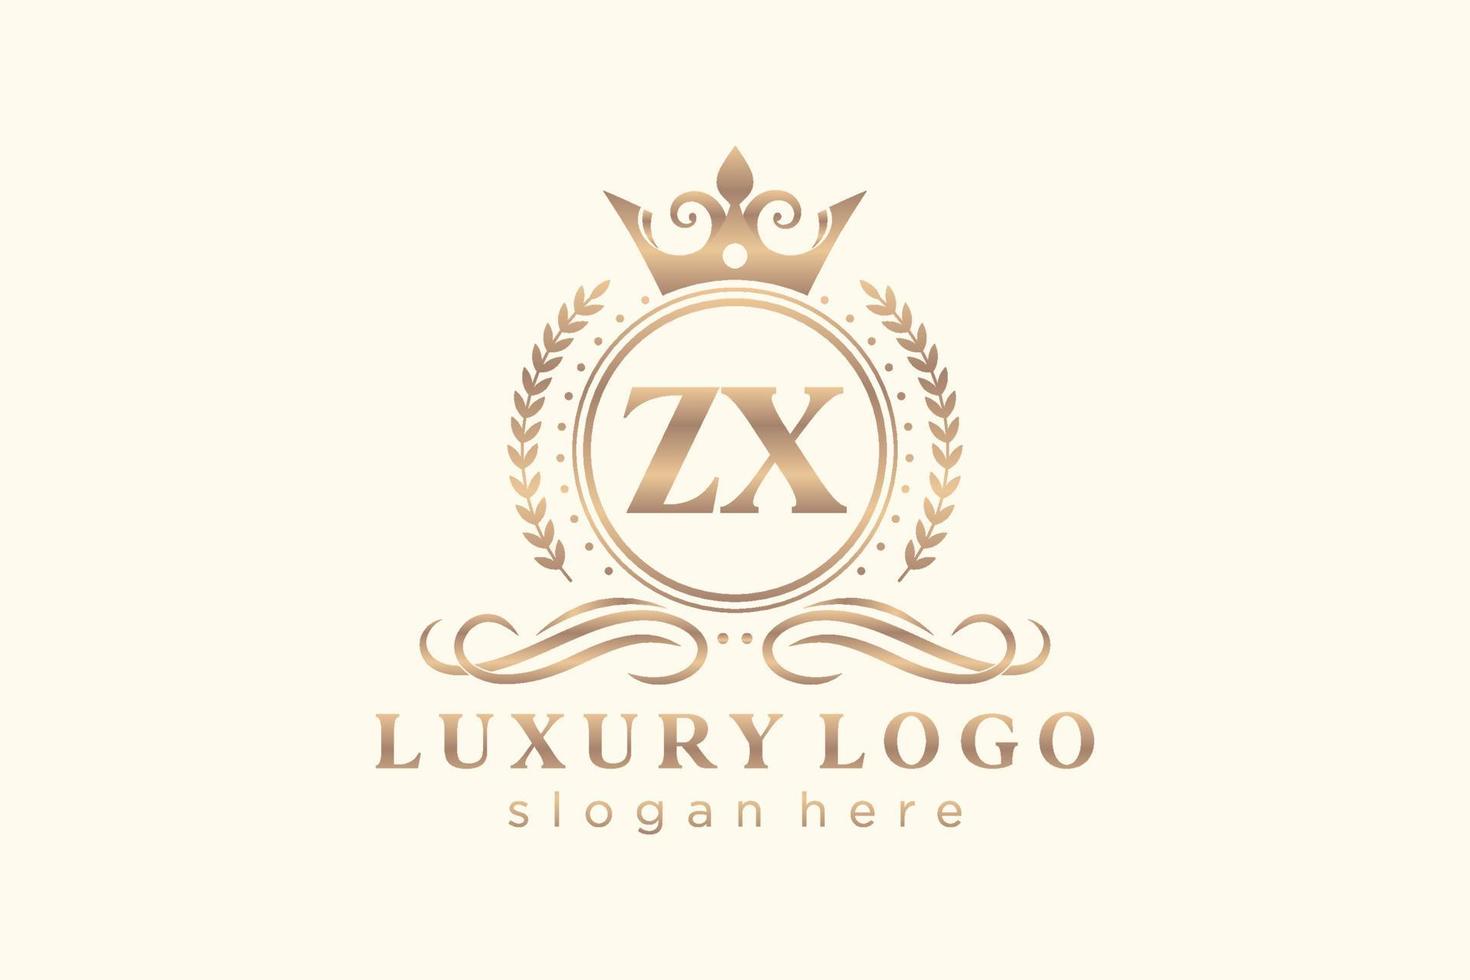 modèle initial de logo de luxe royal de lettre zx dans l'art vectoriel pour le restaurant, la royauté, la boutique, le café, l'hôtel, l'héraldique, les bijoux, la mode et d'autres illustrations vectorielles.